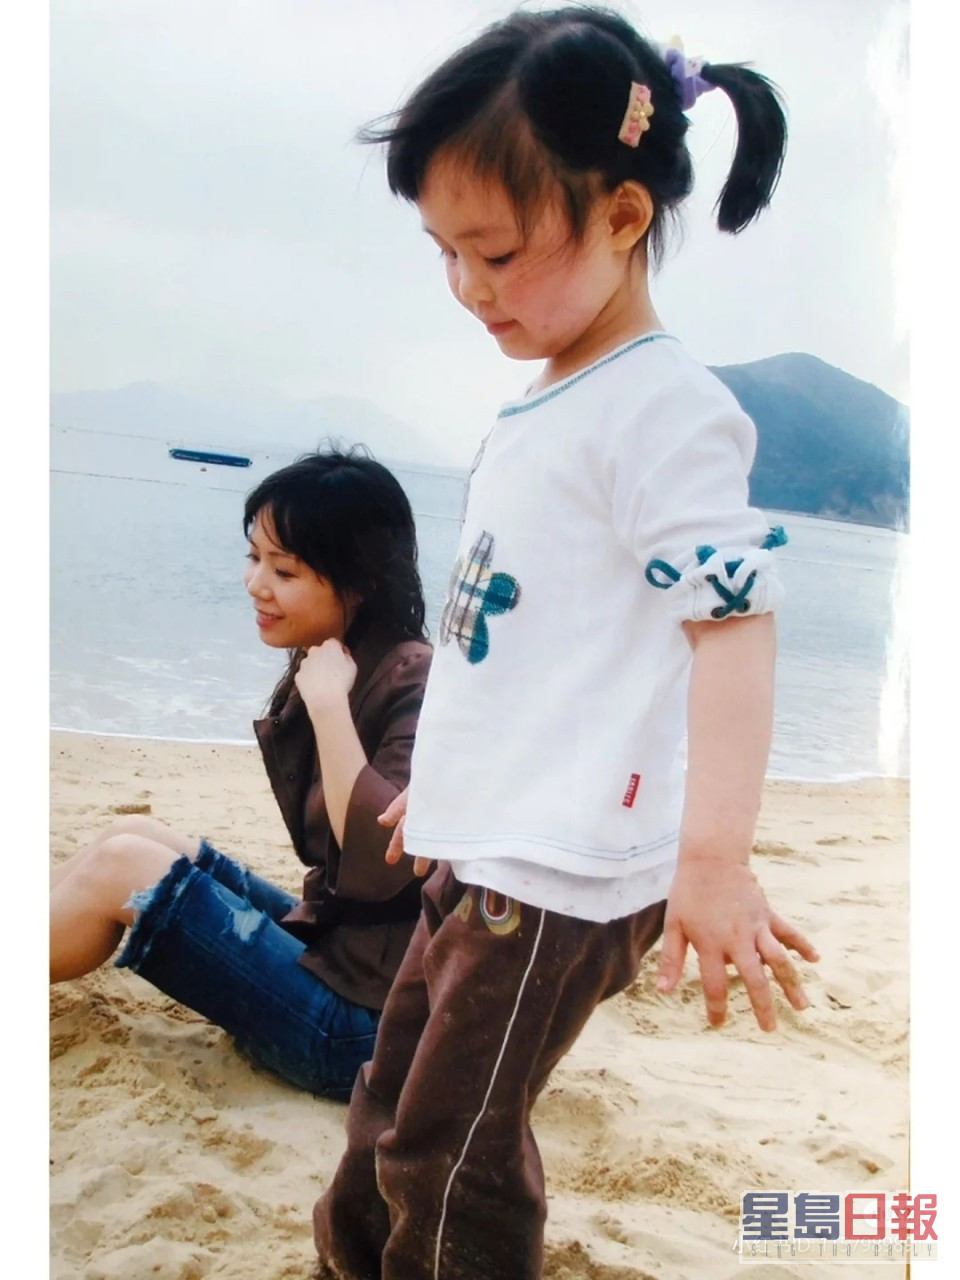 刘秀盈早前曾分享侧面童年照。